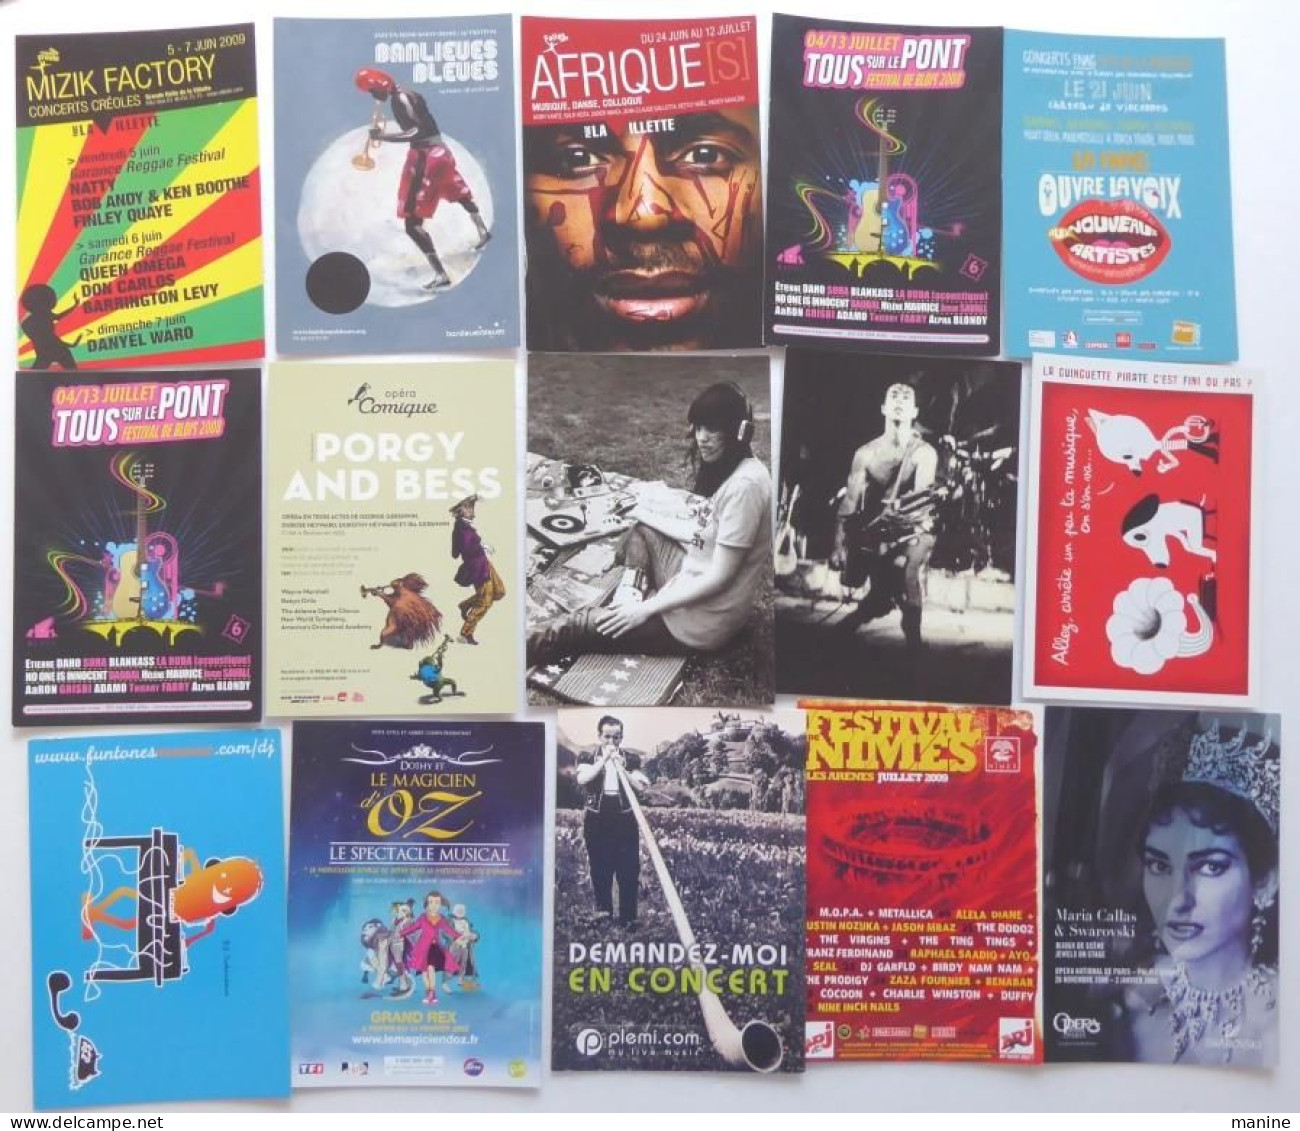 140 "Culture spectacles "Cartes publicitaires; Conte, Cirque, Expo, Festival, Musique, Theatre et cinèma